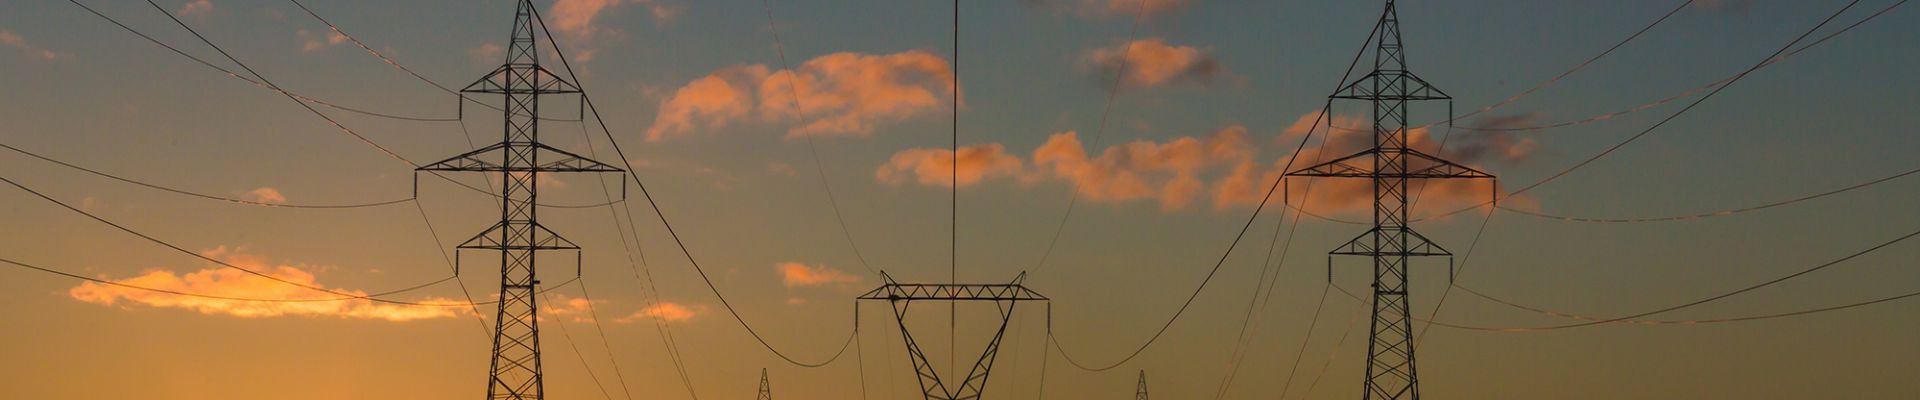 Strommasten - Vertikale Netzlastprognosen